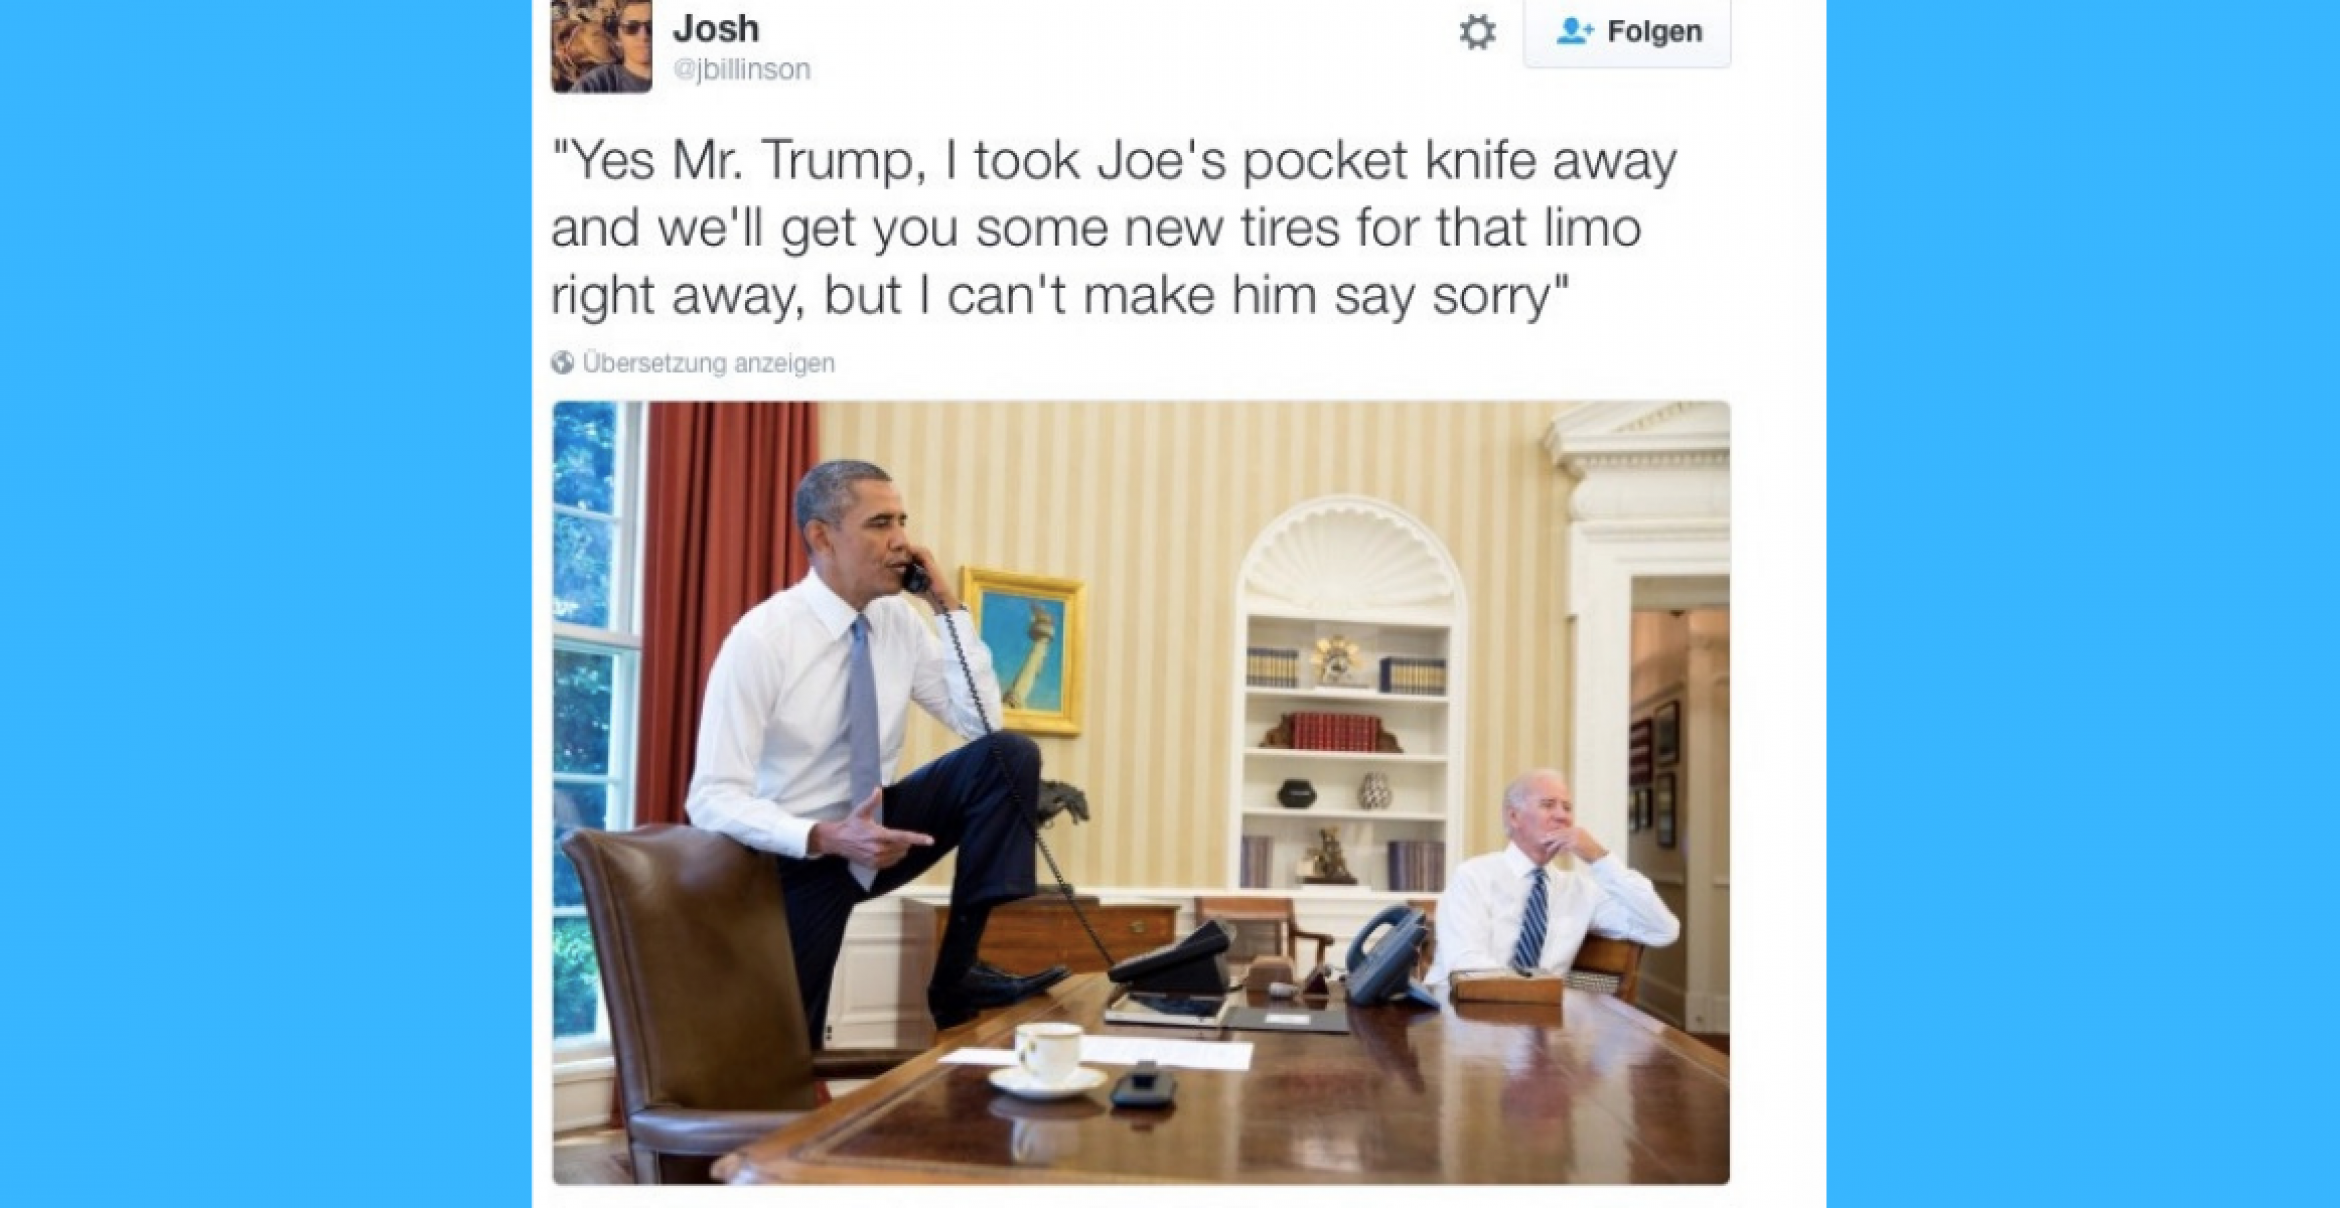 Diese Memes von Obama und Biden sind ein Zeichen für echte Bromance